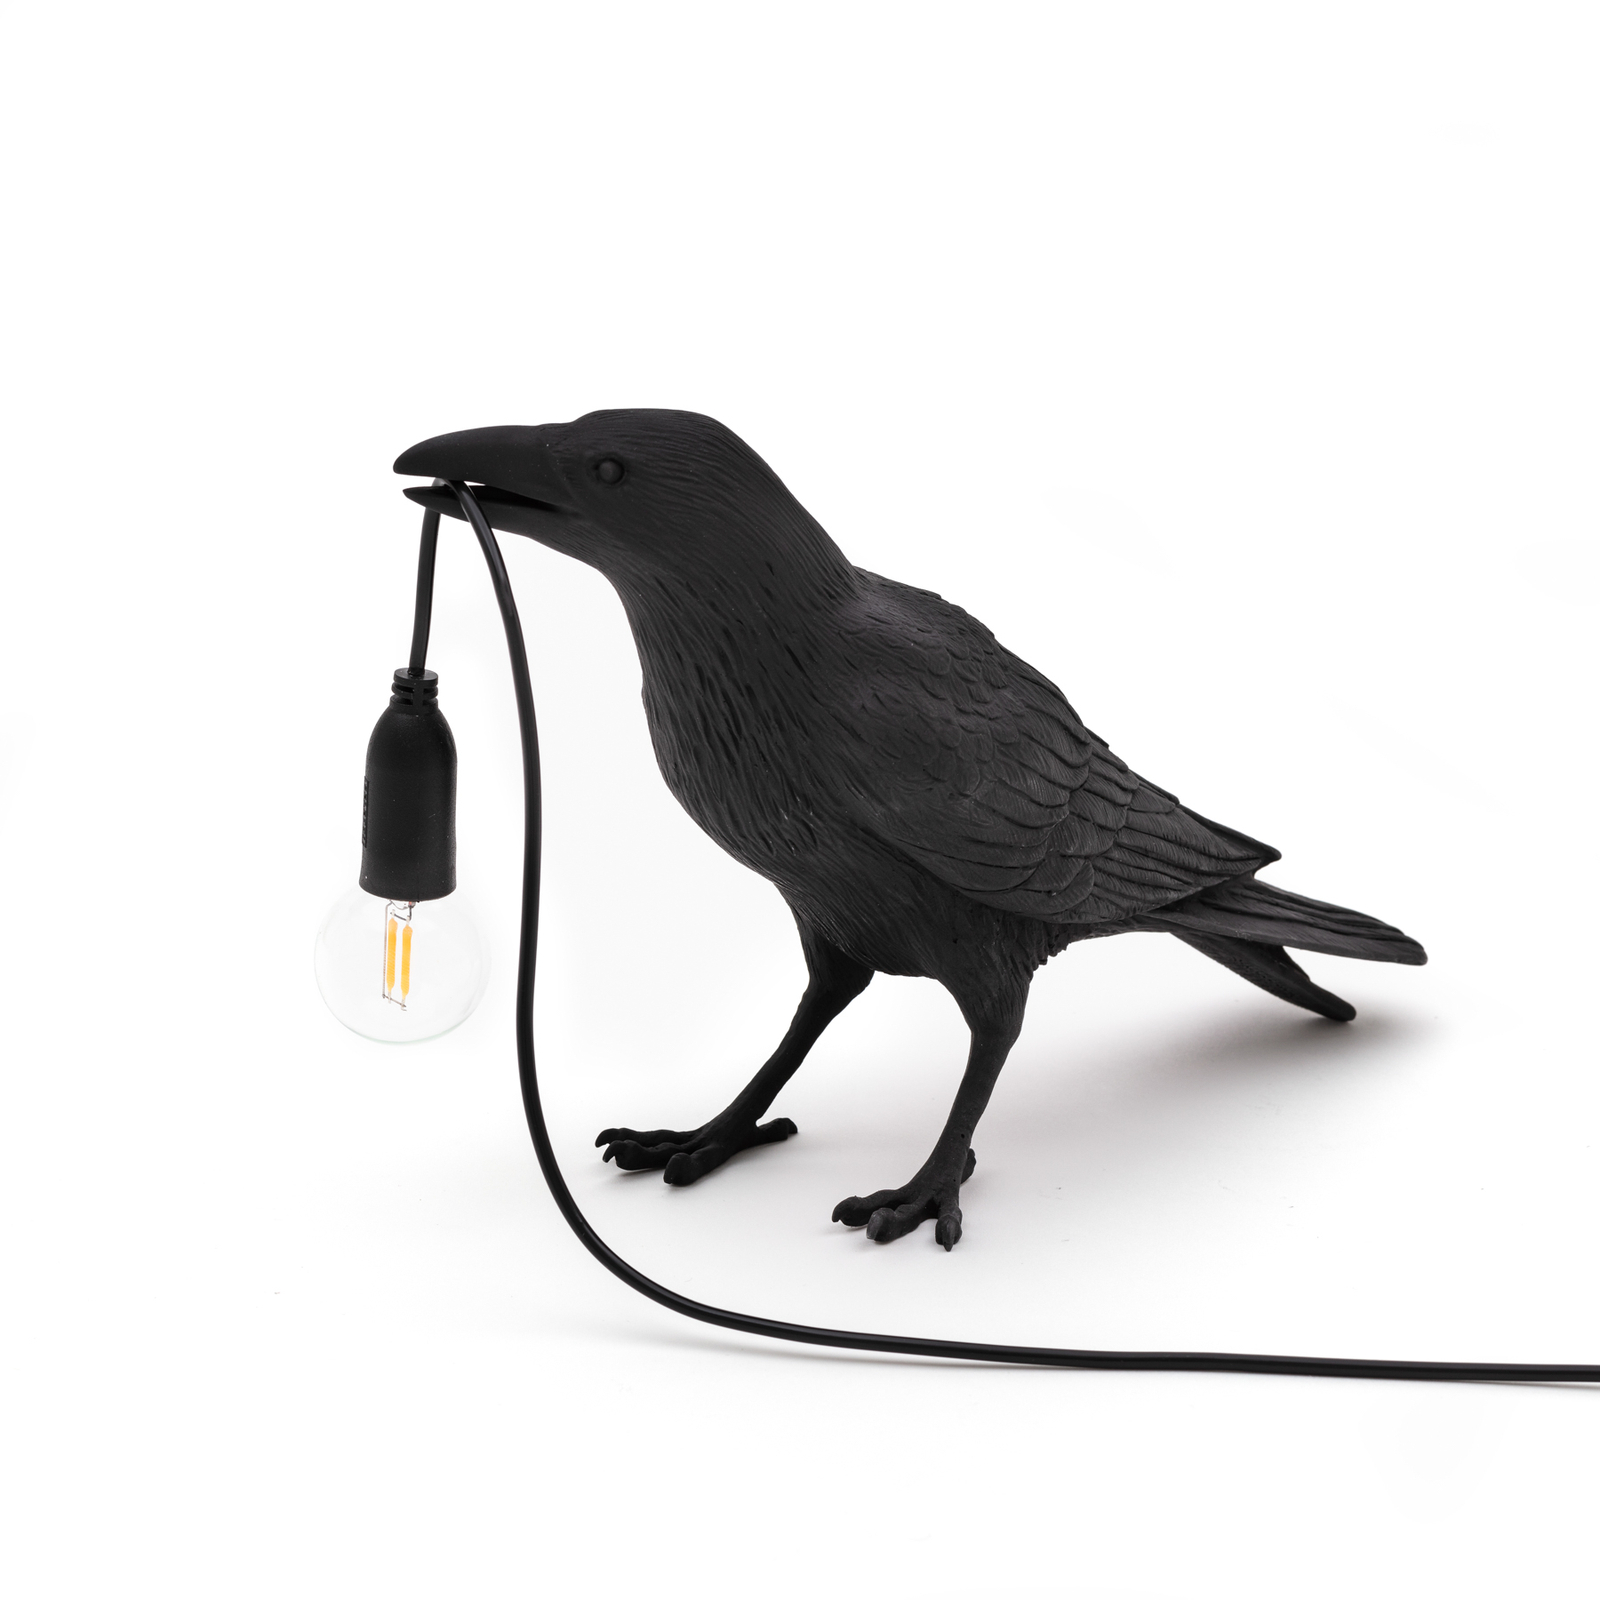 LED deko terasové světlo Bird Lamp čekající černá